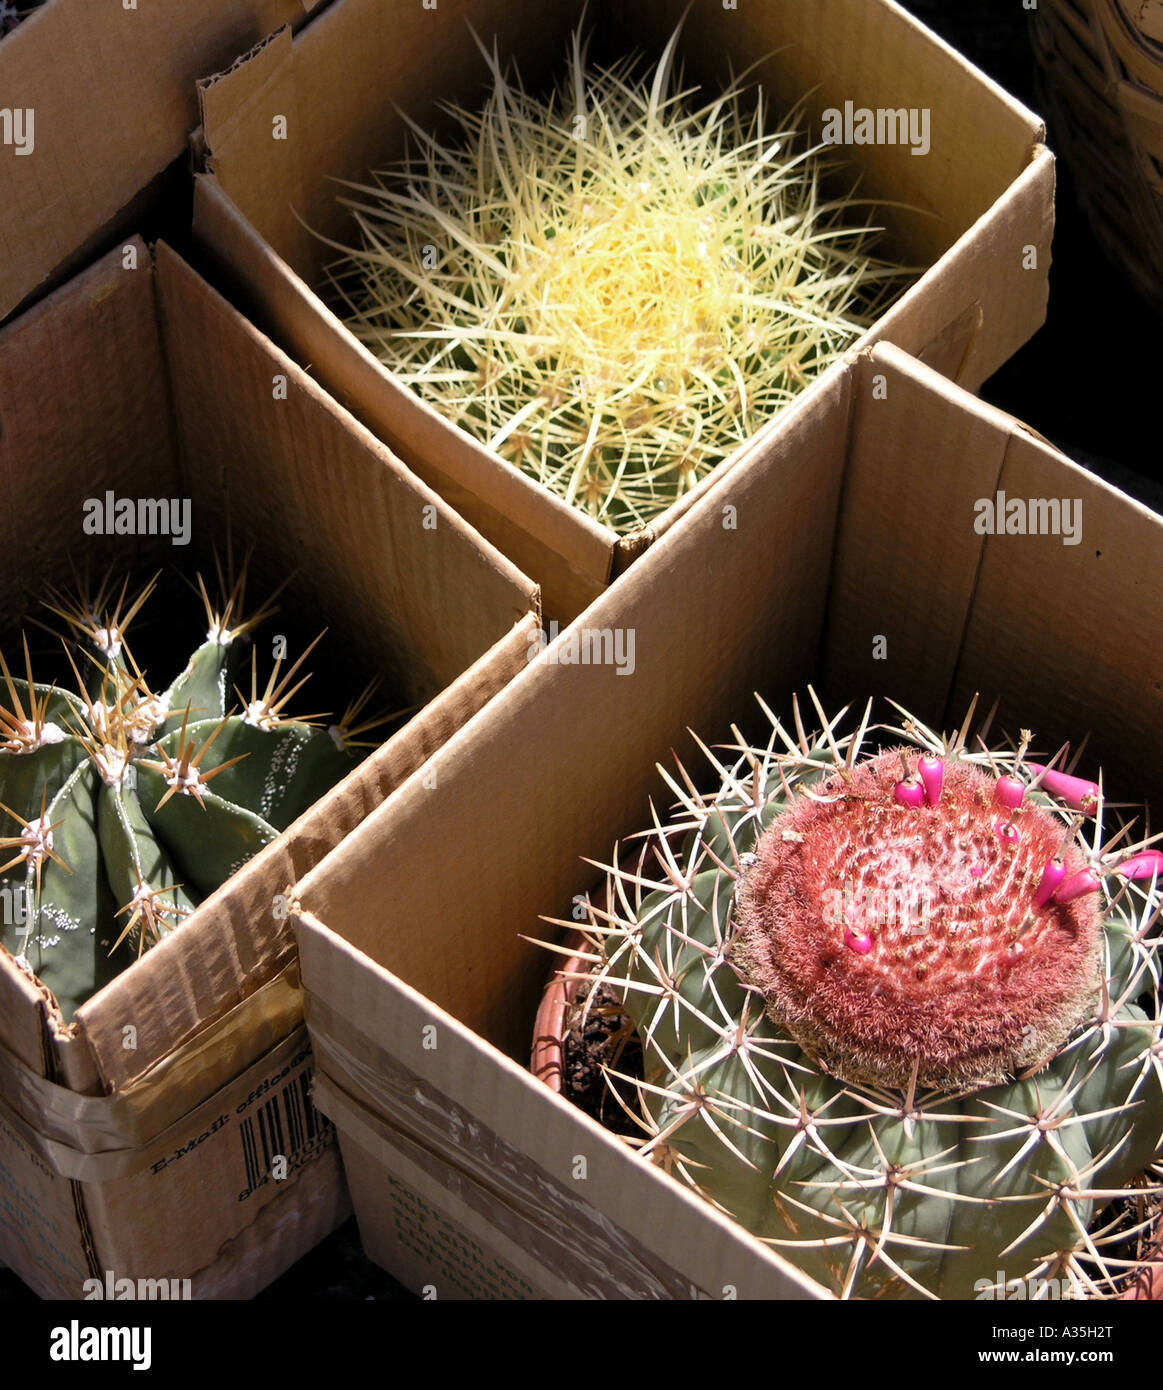 Cactus en cajas para la venta a turistas Fotografía de stock - Alamy